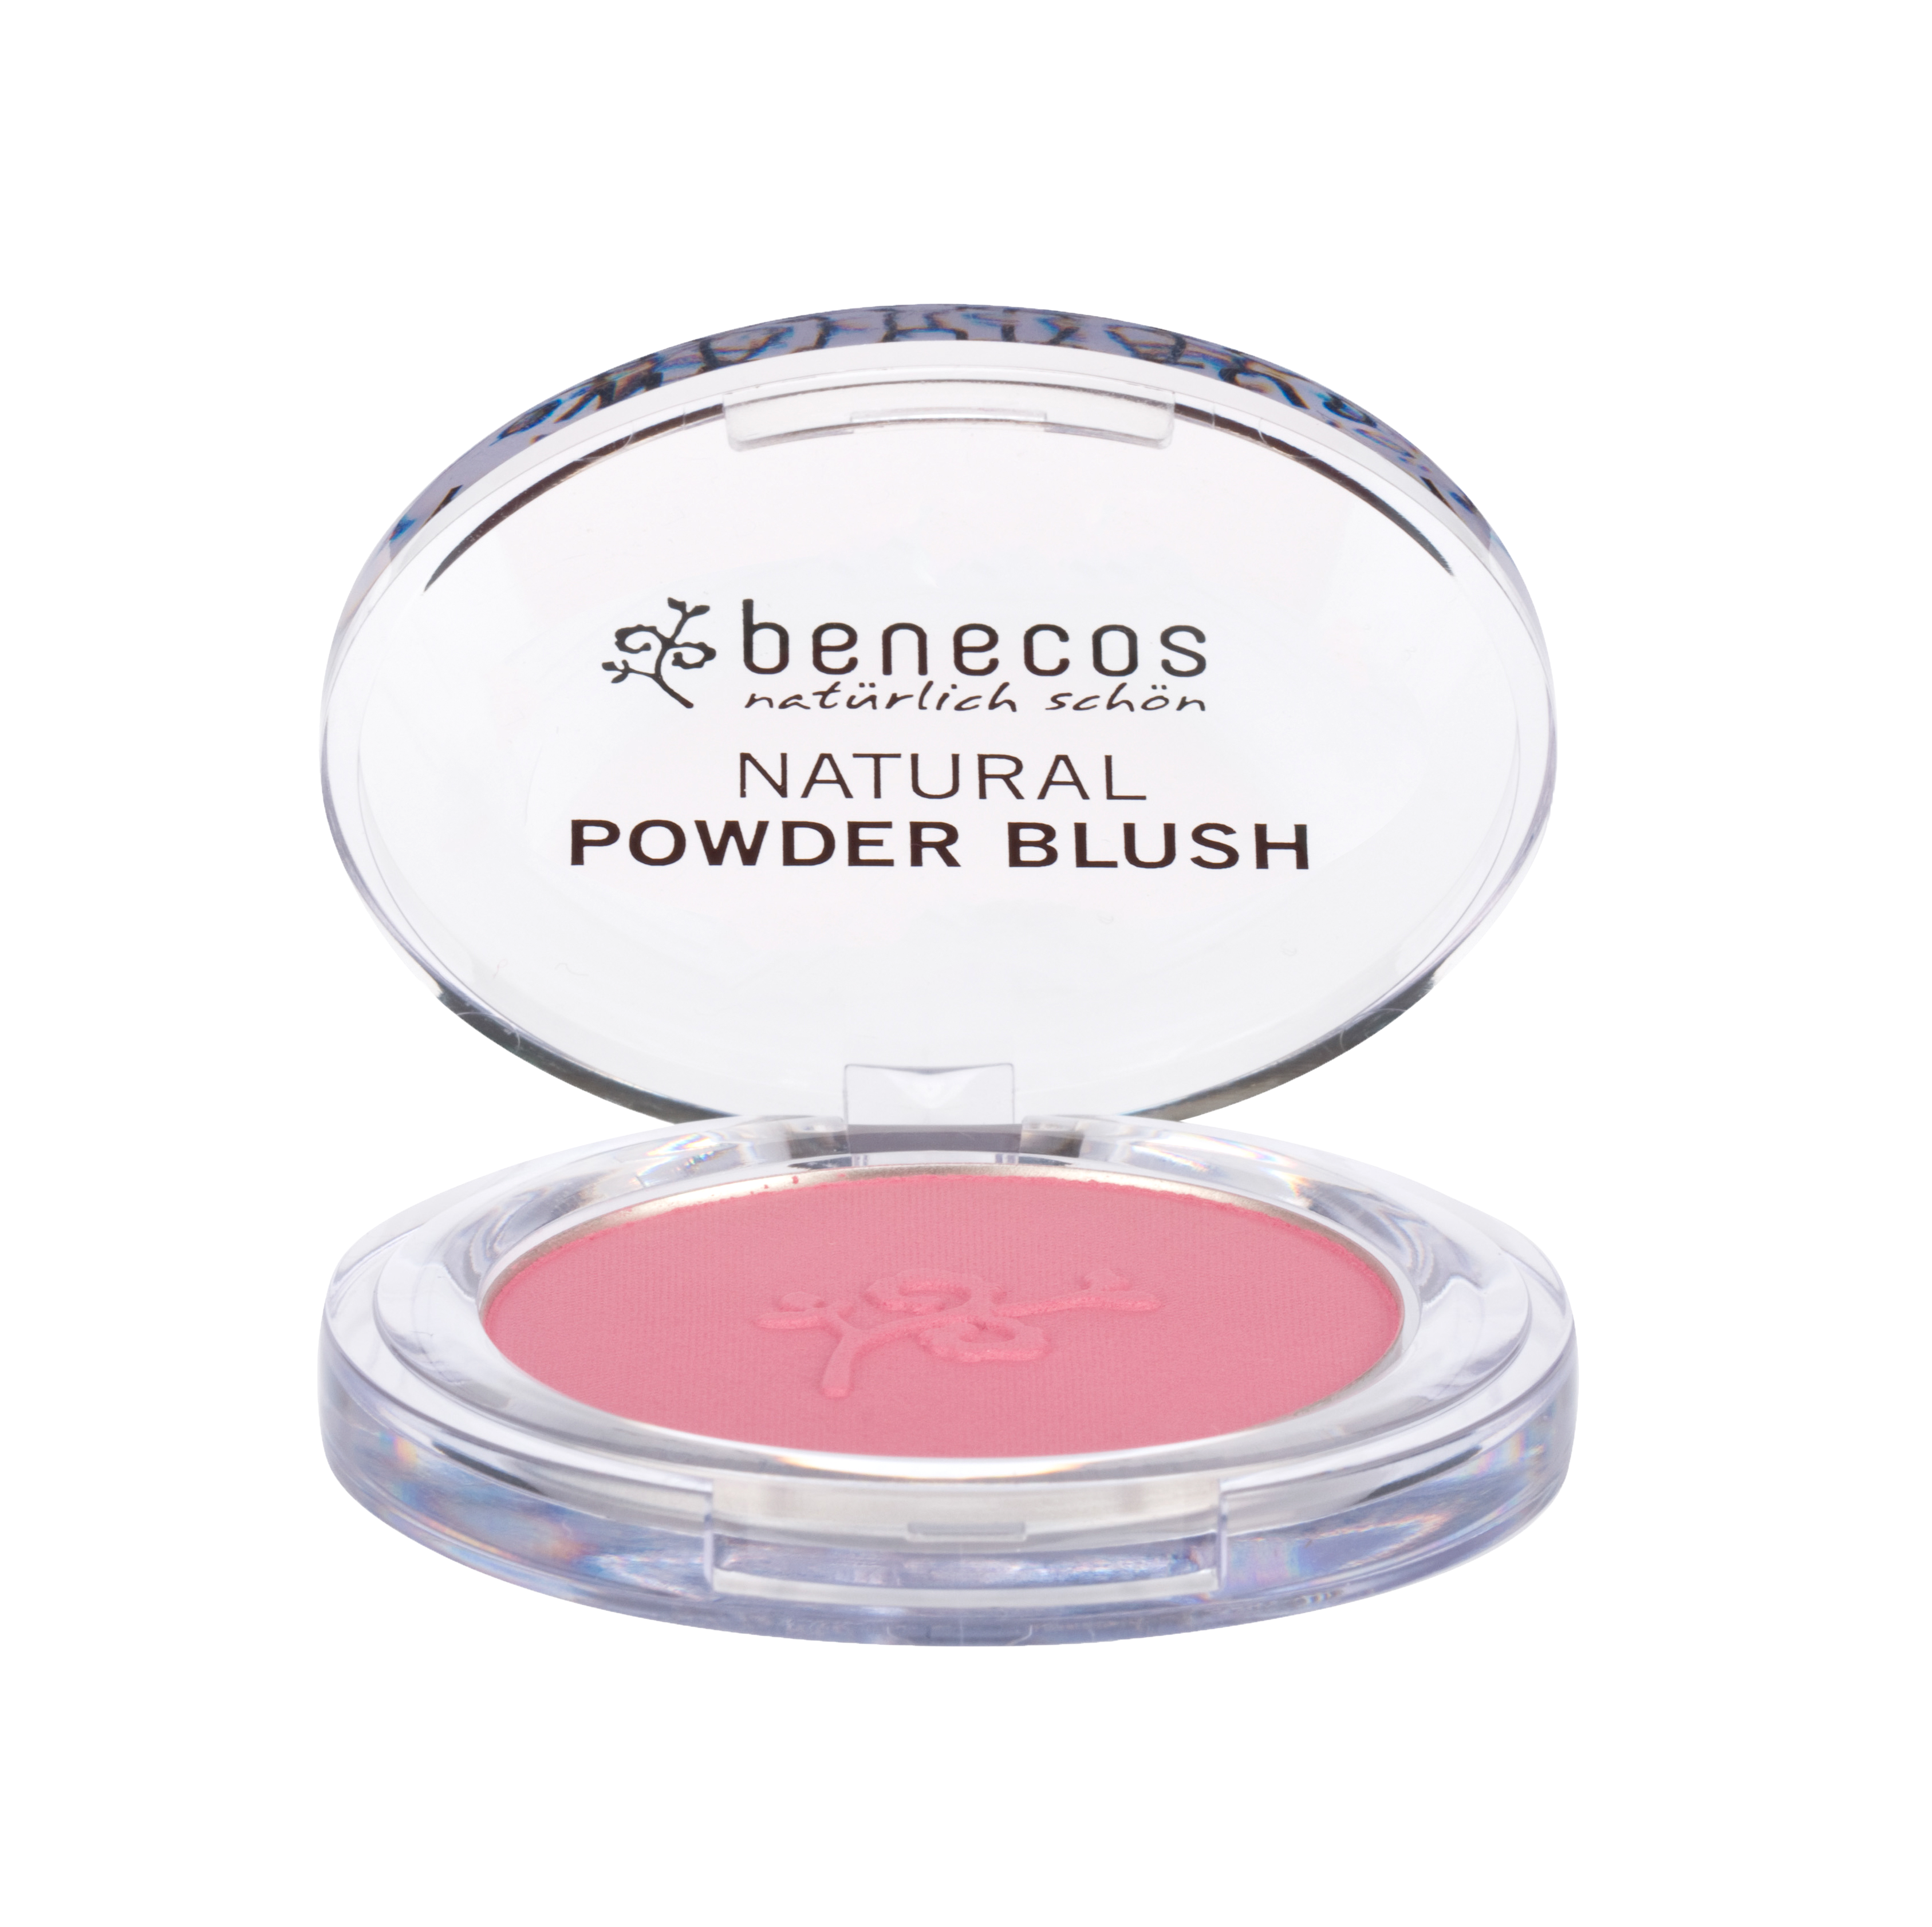 Benecos Natural Powder Blush - Mallow Rose